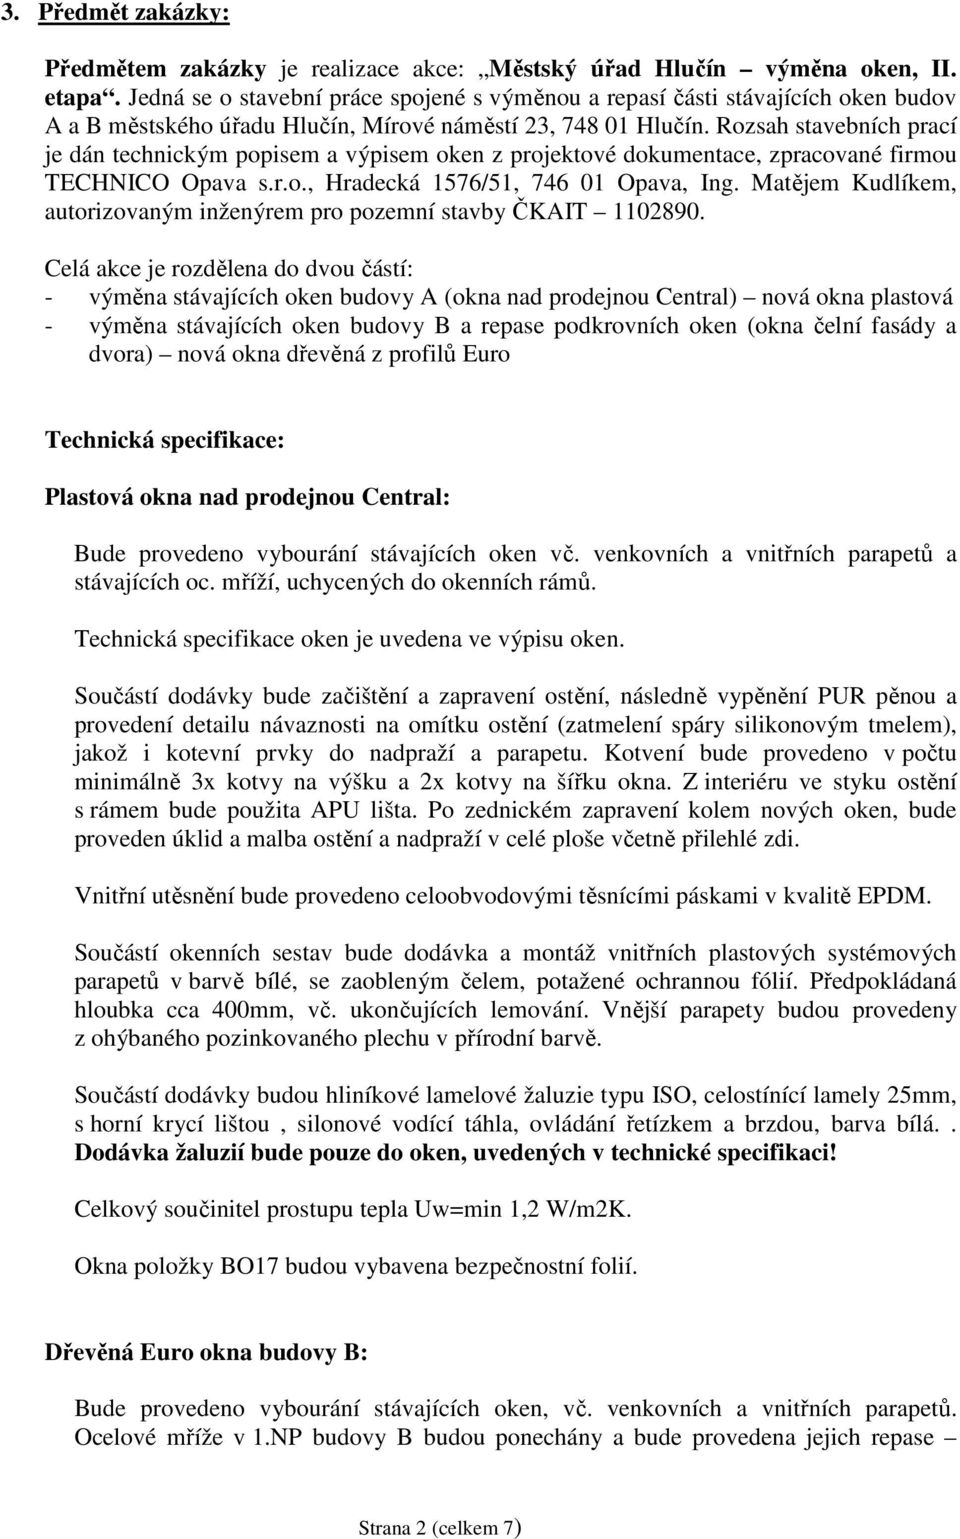 Rozsah stavebních prací je dán technickým popisem a výpisem oken z projektové dokumentace, zpracované firmou TECHNICO Opava s.r.o., Hradecká 1576/51, 746 01 Opava, Ing.